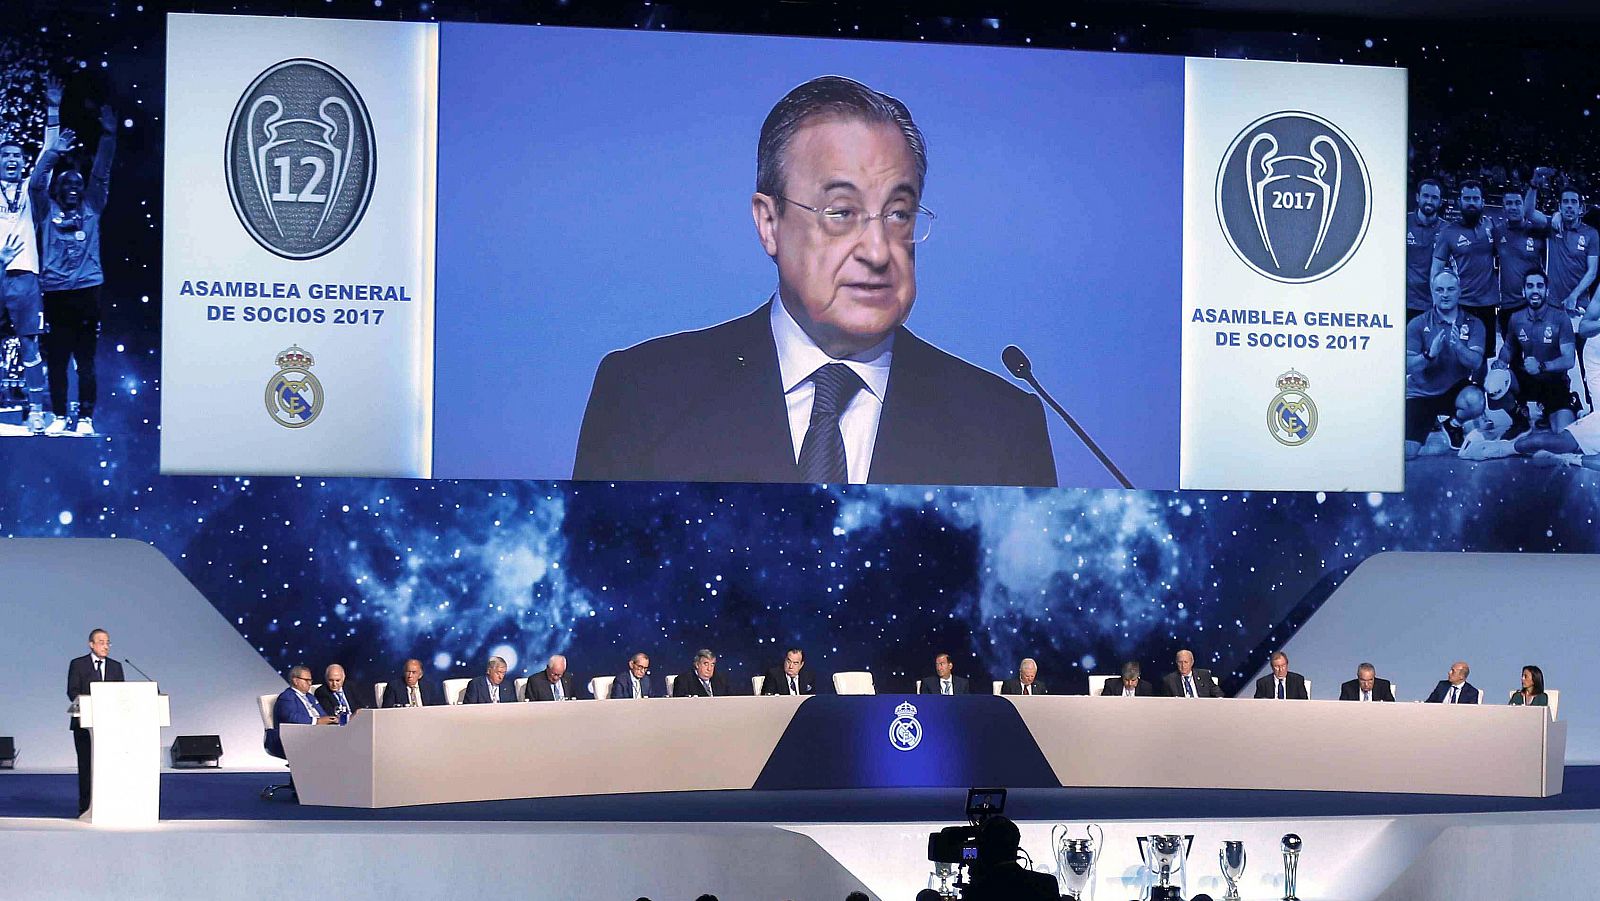 Imagen de archivo del presidente del Real Madrid, Florentino Pérez, durante una intervención en una asamblea.